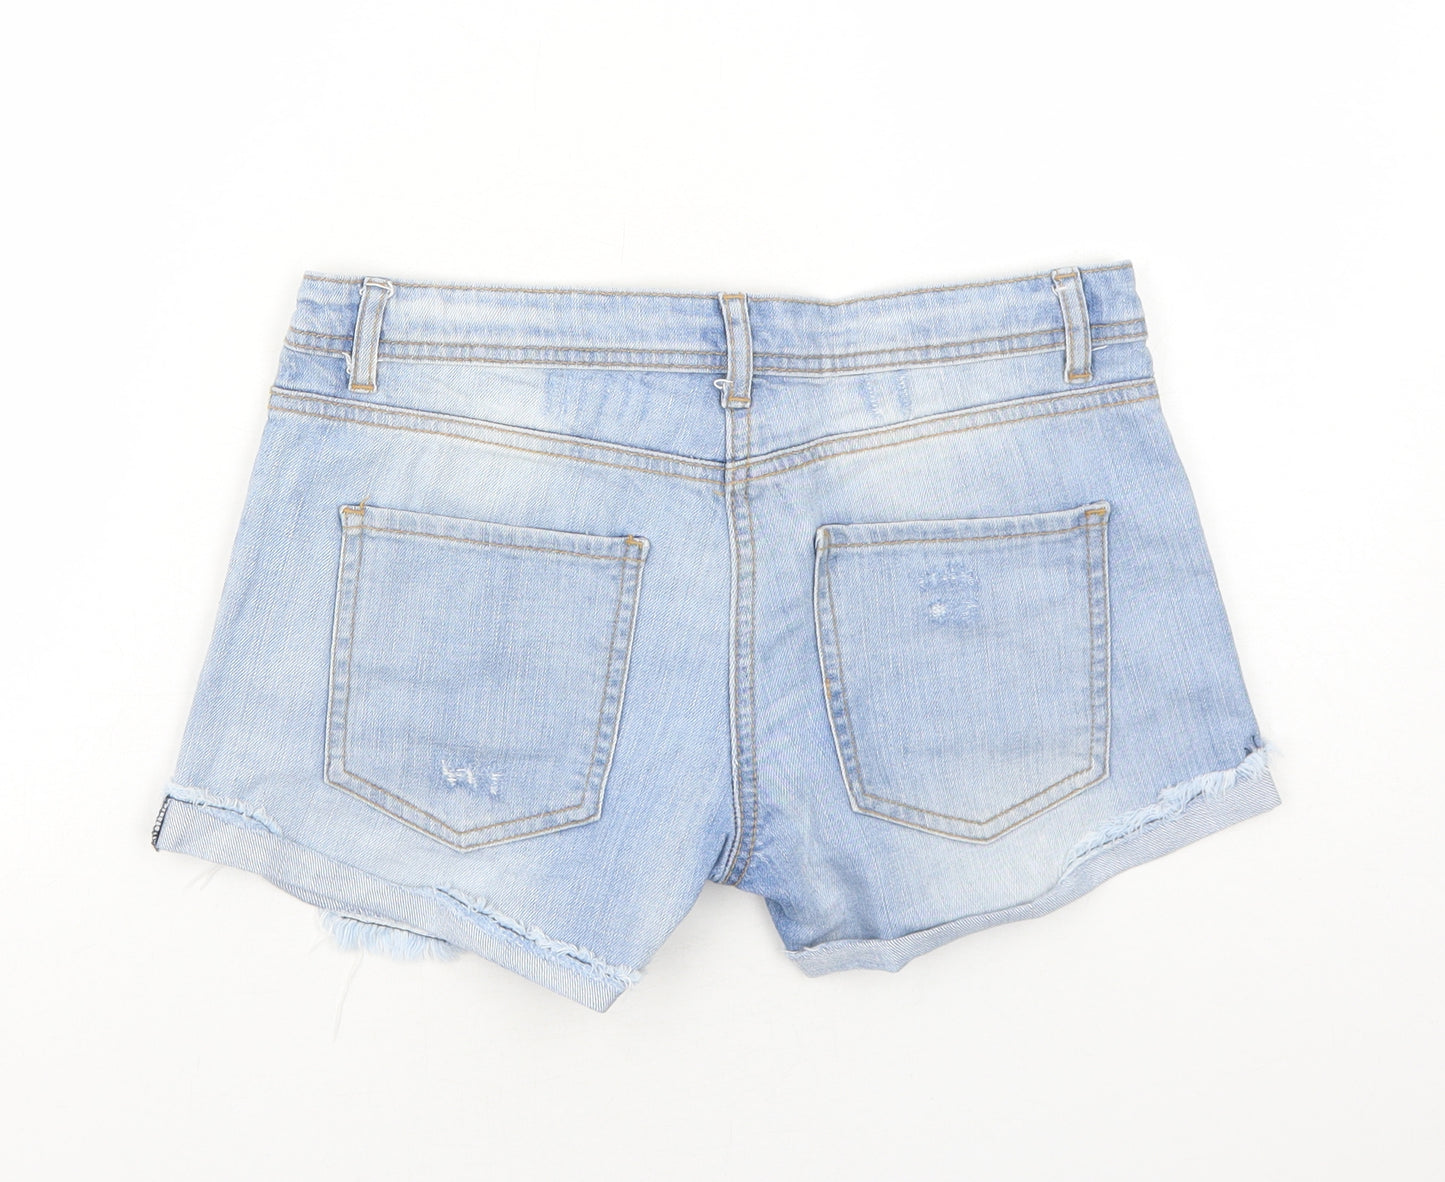 Henry Holland Womens Blue Cotton Cut-Off Shorts Size 8 Regular Zip